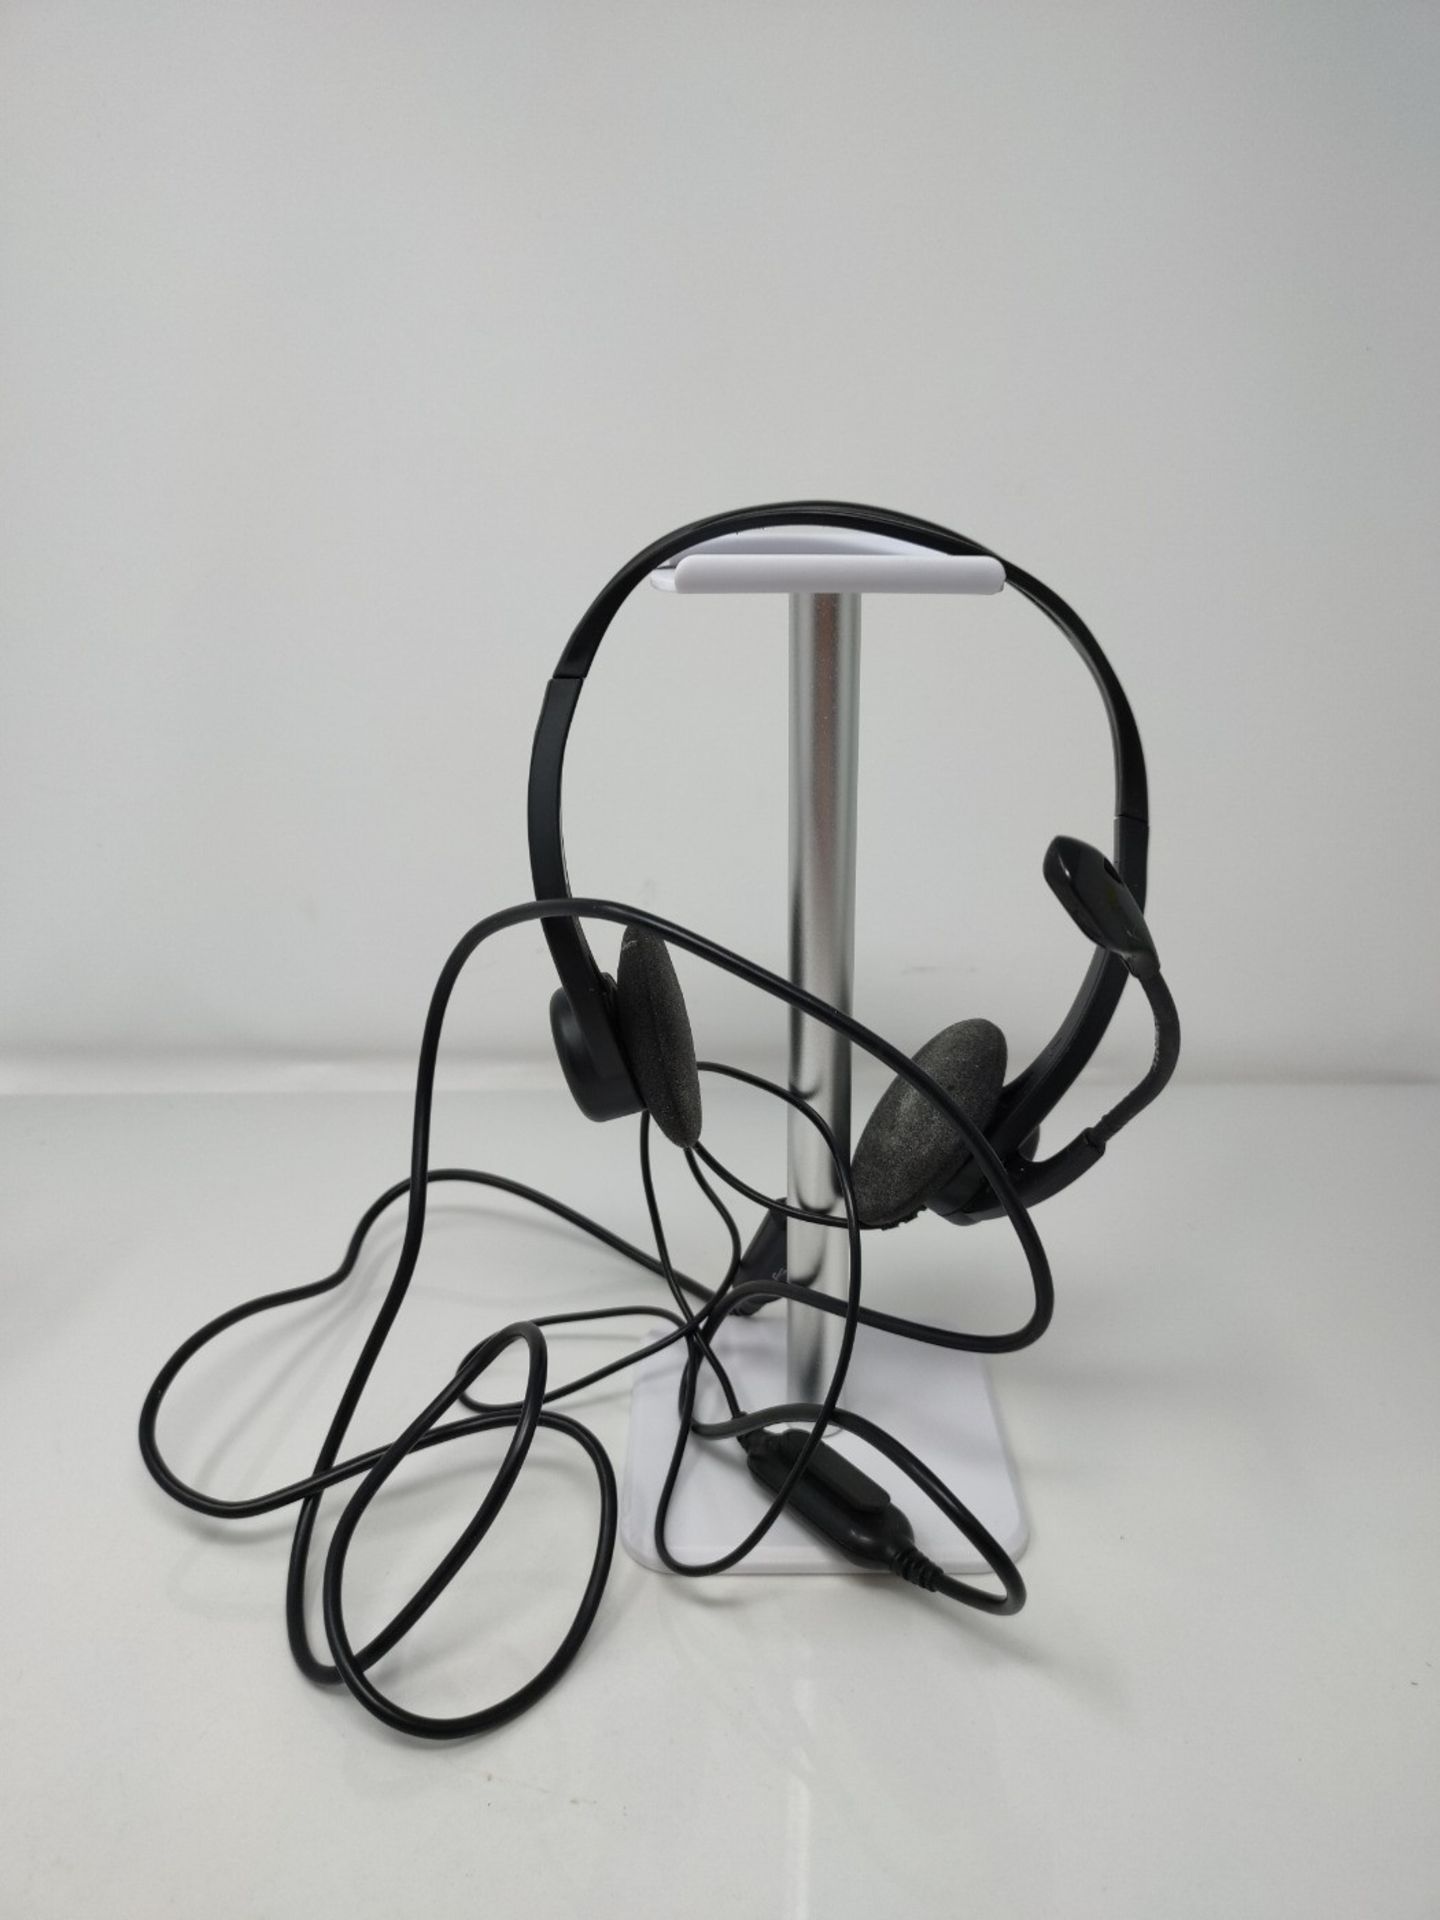 Logitech 960 Kopfhörer mit Mikrofon, Stereo-Headset, Verstellbares Mikrofon mit Rausc - Image 2 of 2